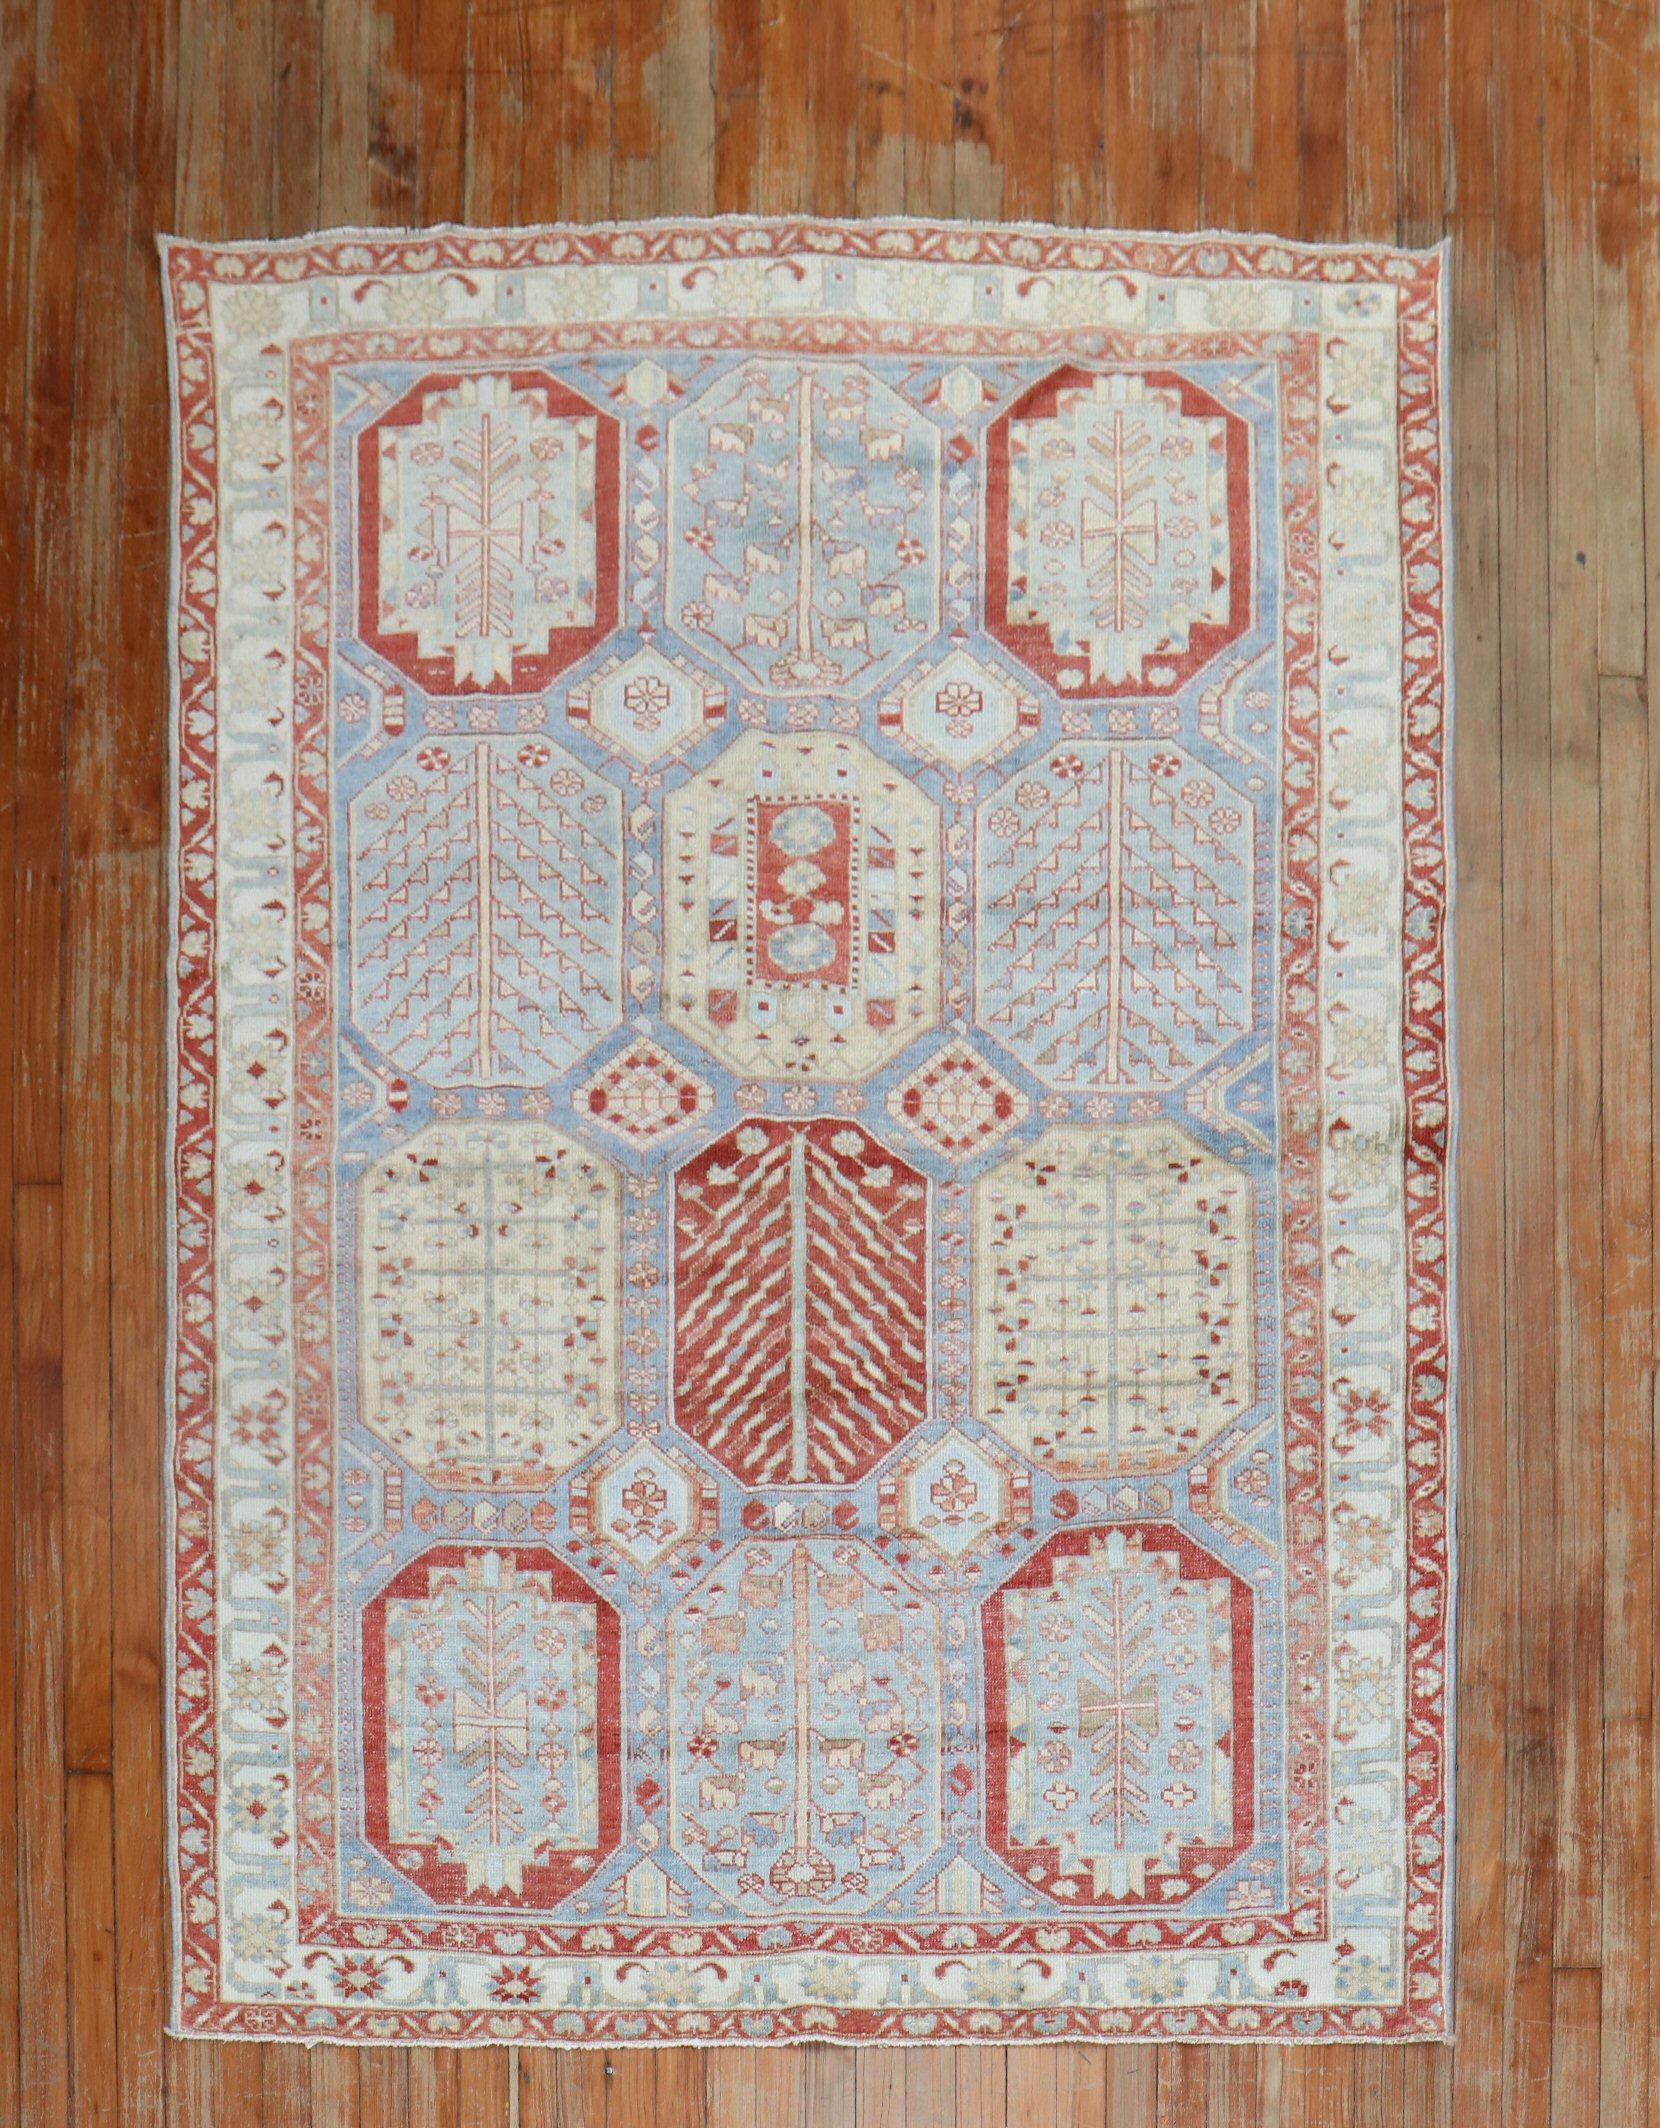 Ein großformatiger, himmelblau grundierter, quadratischer, mittelgroßer persischer Bakhtiari-Teppich aus den 1940er Jahren

Maße: 4'11